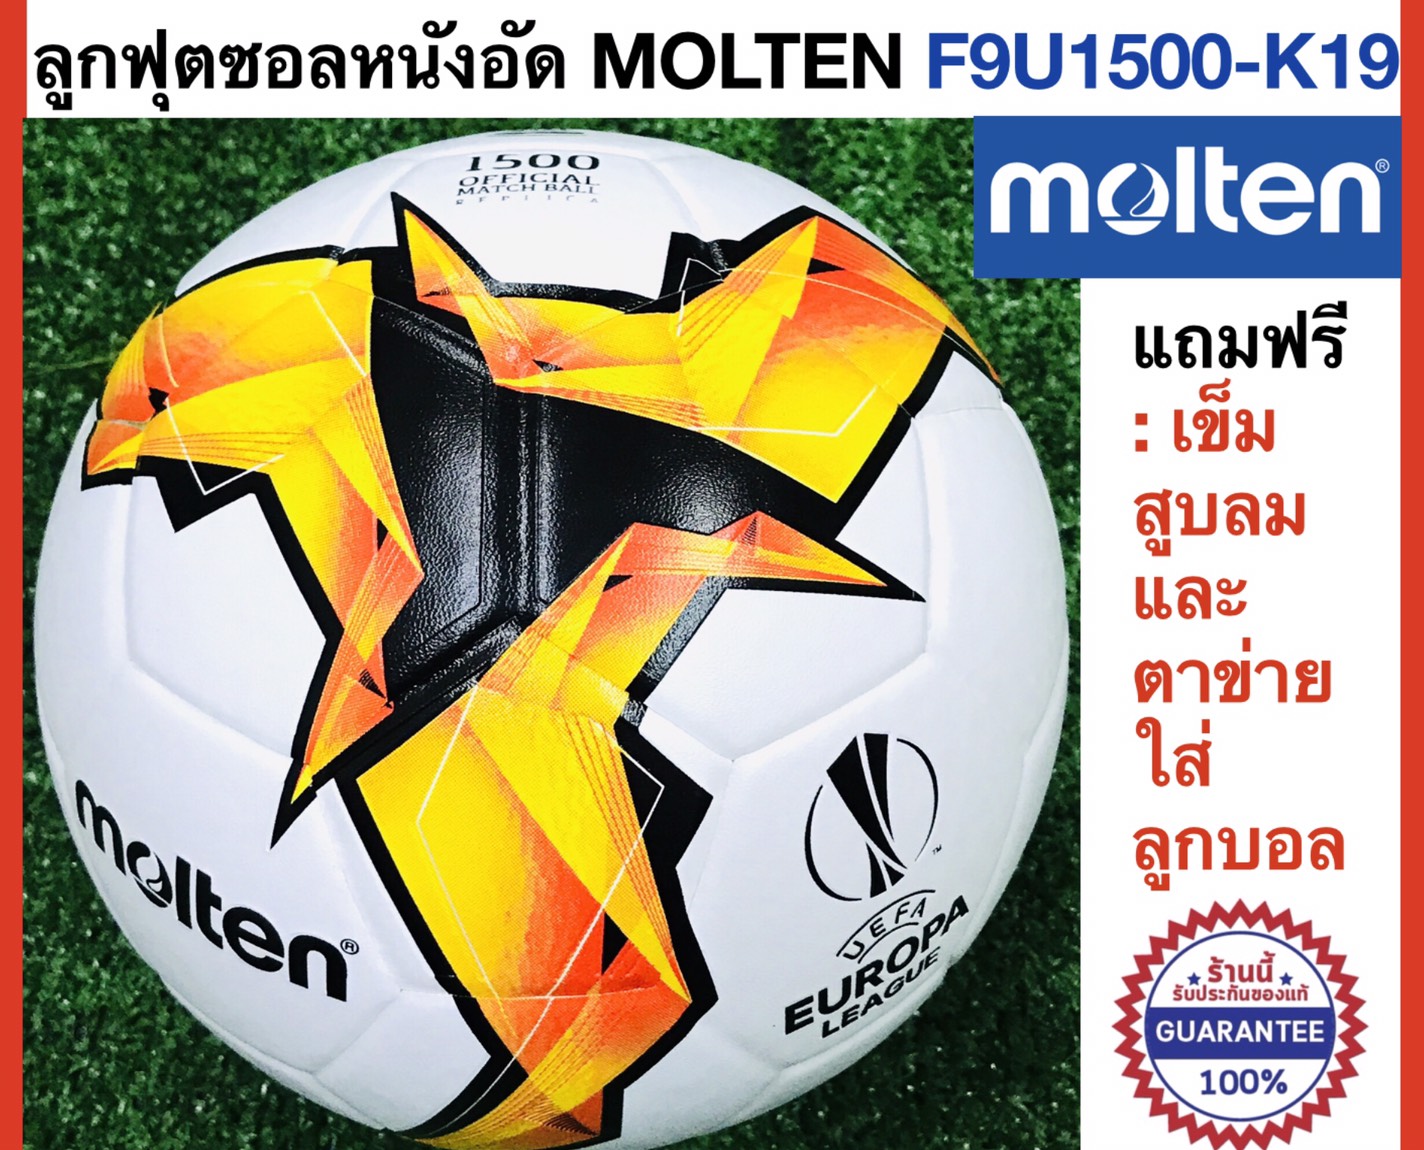 Molten ลูกฟุตซอลมอลเท่น หนังอัด รุ่น F9U1500-K19 ของแท้ แถมฟรี : เข็มสูบและตาข่ายใส่บอล